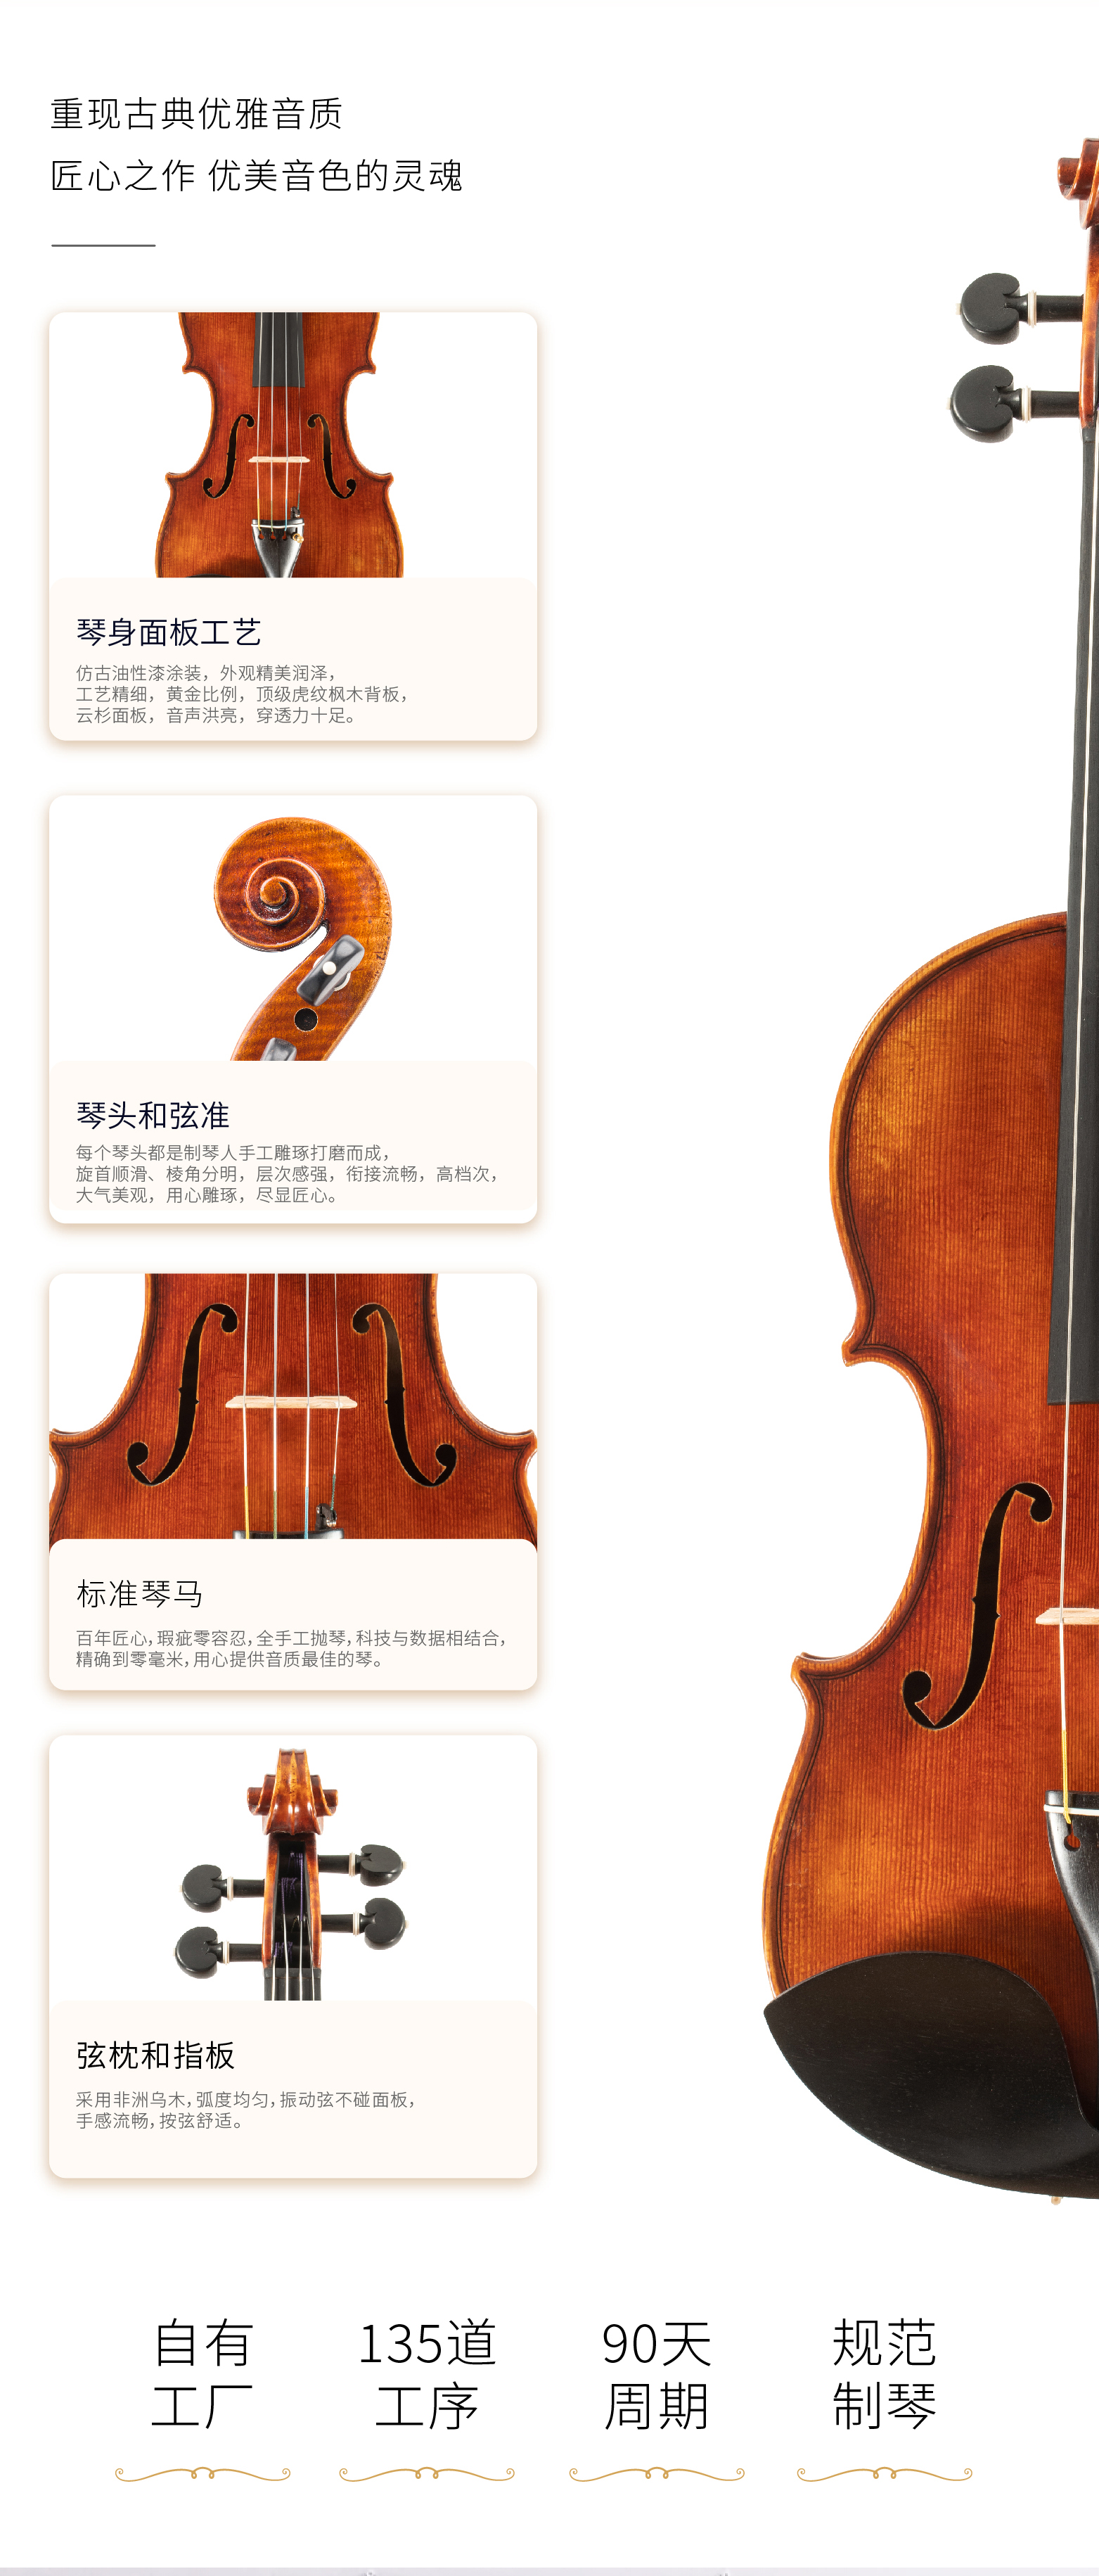 熙珑乐器专营店-详情-v1-2_SV892小提琴_复制_PC-副本-2_07.jpg